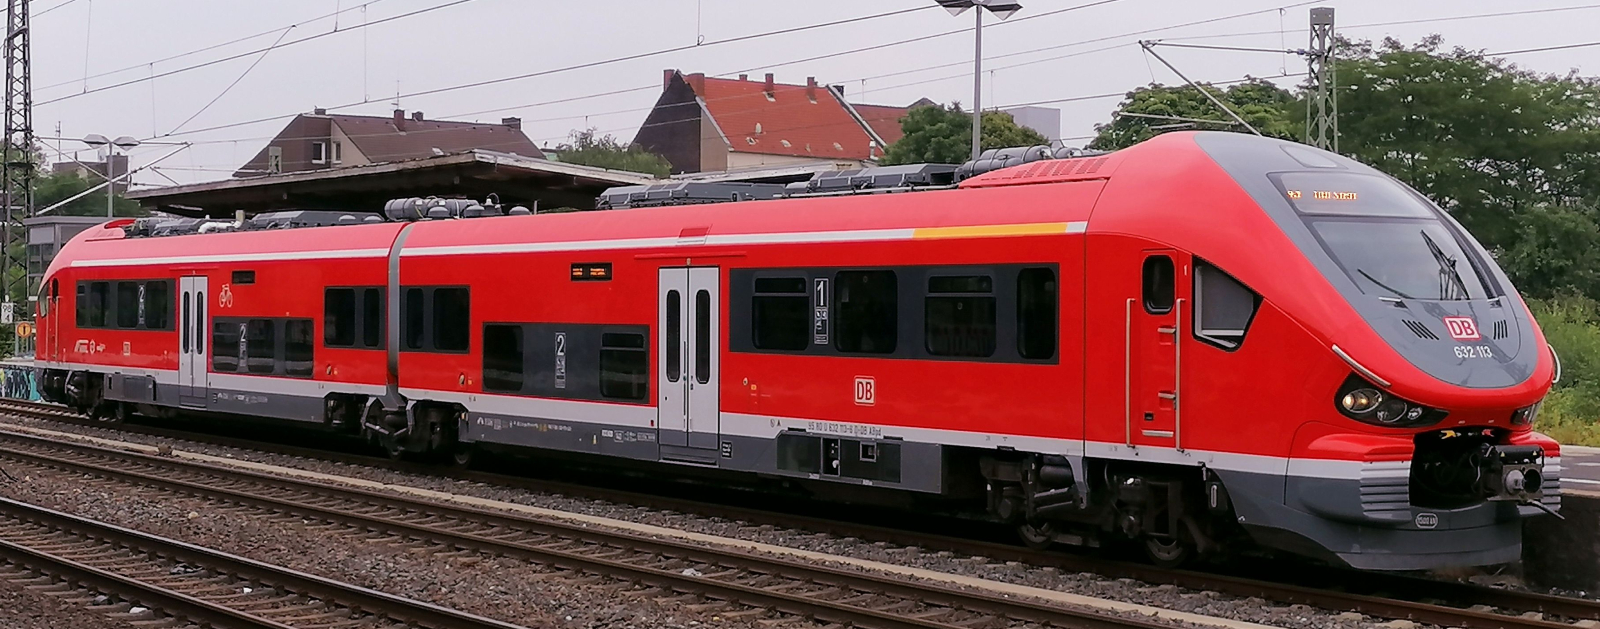 DB Regio 632 113 in July 2019 in Herne